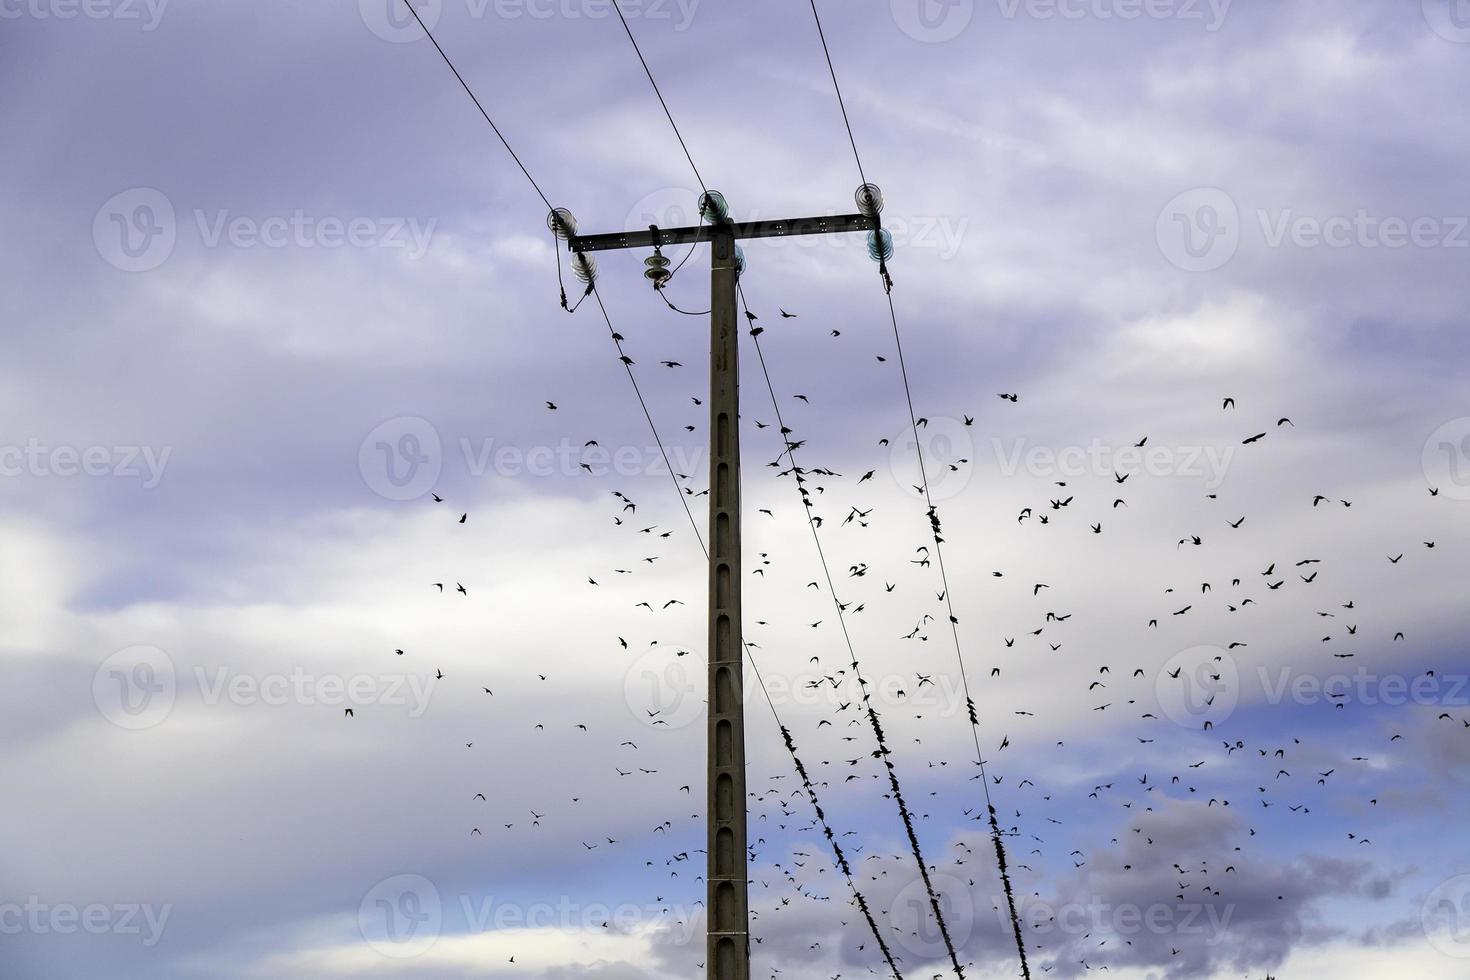 vogels op telefoonlijnen, verzameld in grote groepen foto